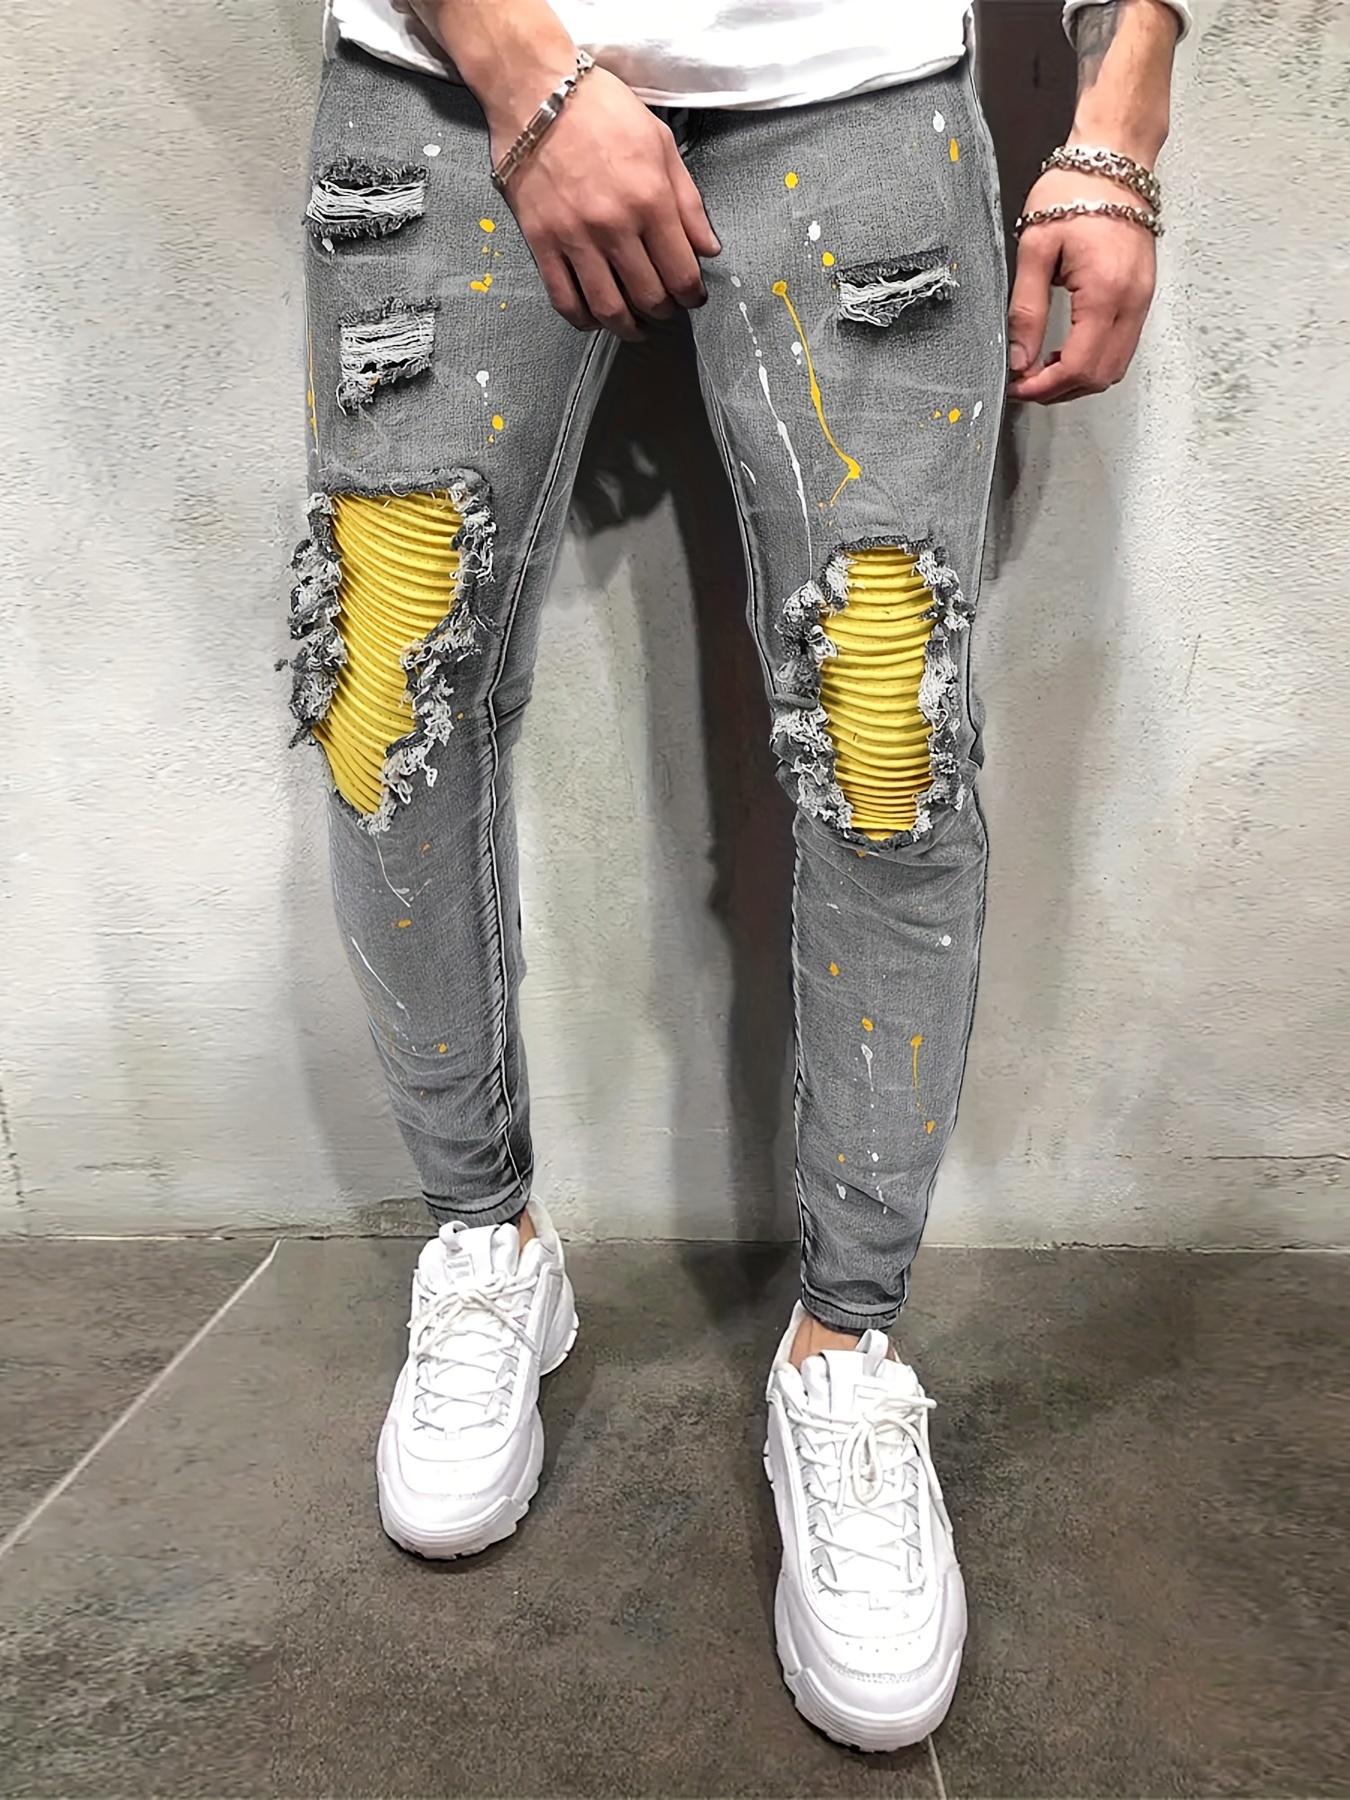 Custom SPRAY PAINT jeans